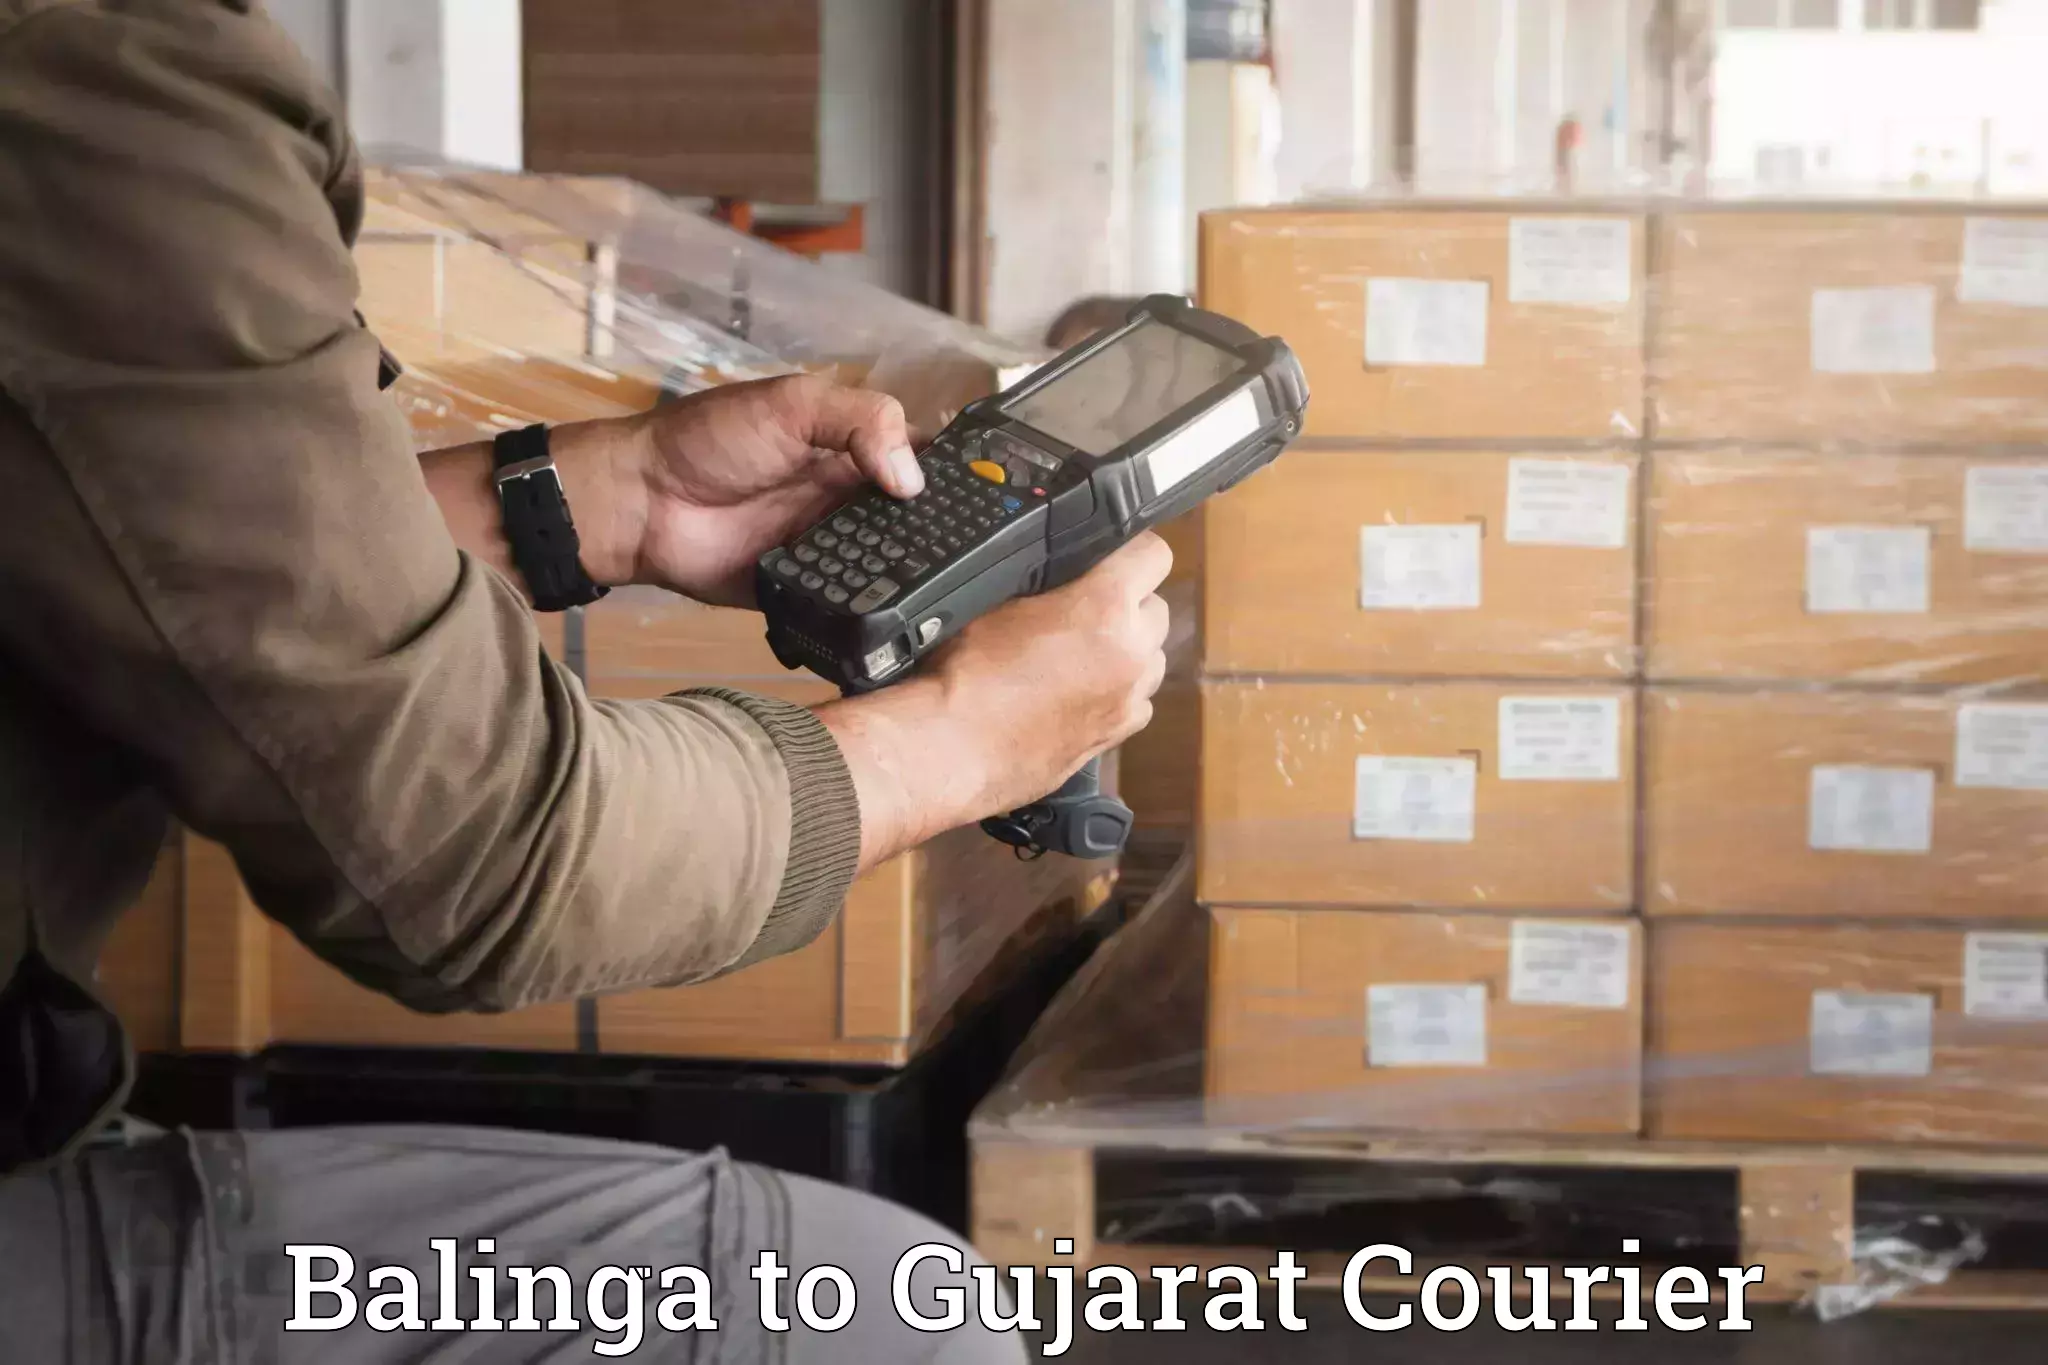 Furniture moving experts Balinga to Gujarat